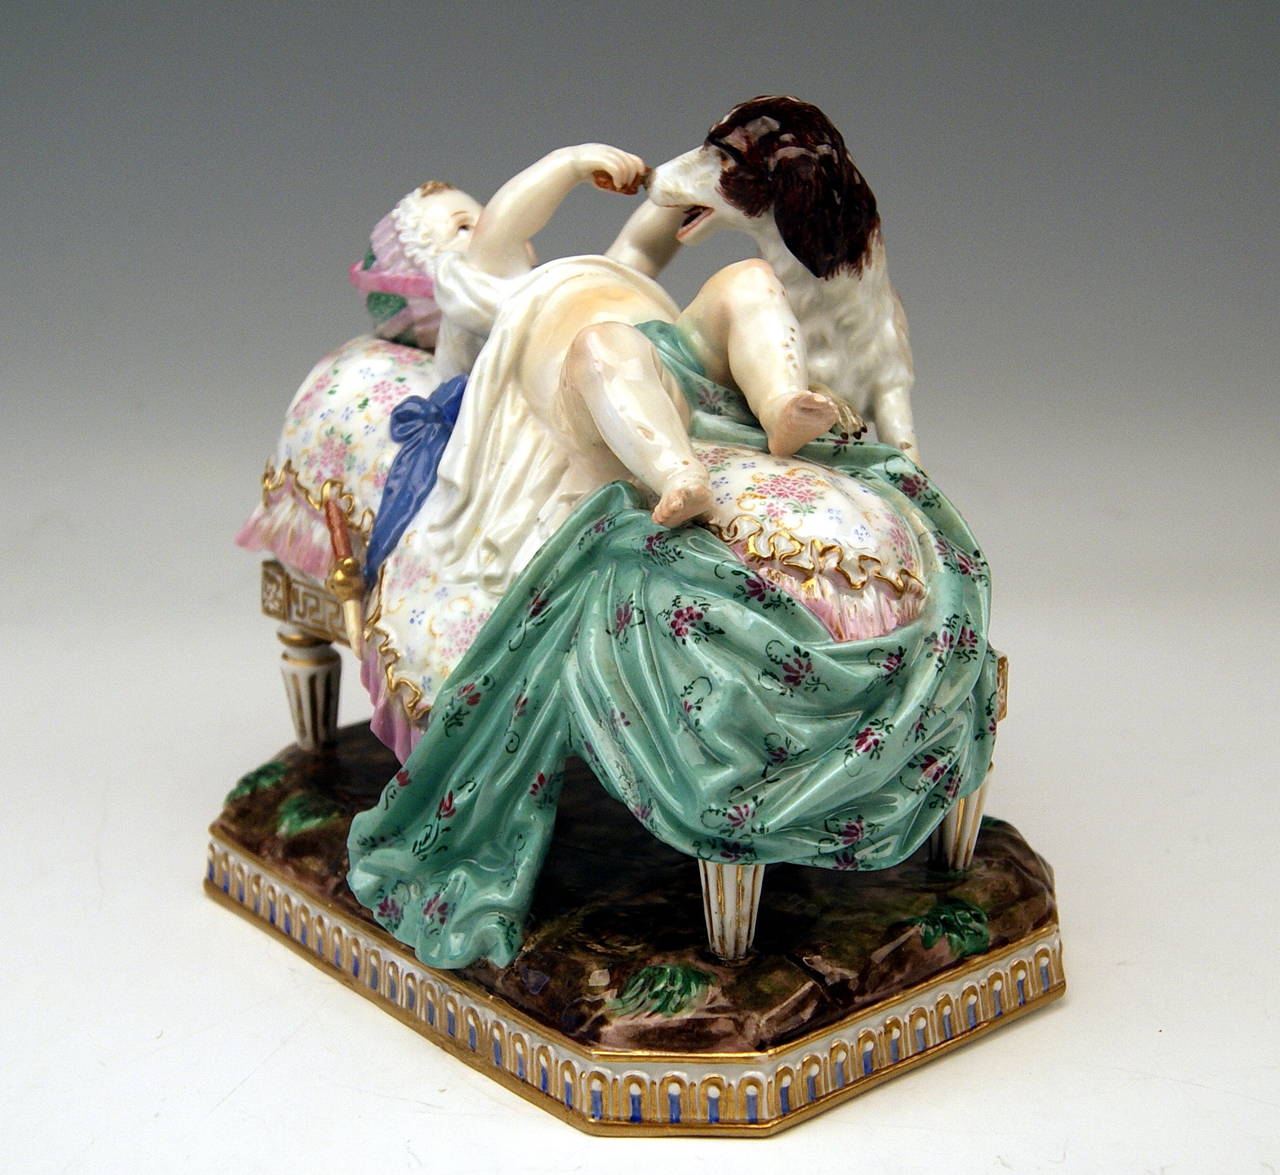 Groupe de figurines Meissen Gorgeous créé par Michel Victor Acier
(1736 - 1799)  vers l'année 1774 :  Plaisir de l'enfance

Spécifications :
Un adorable bébé est allongé sur une chaise longue rembourrée : Il joue avec
un chien s'appuyant sur le